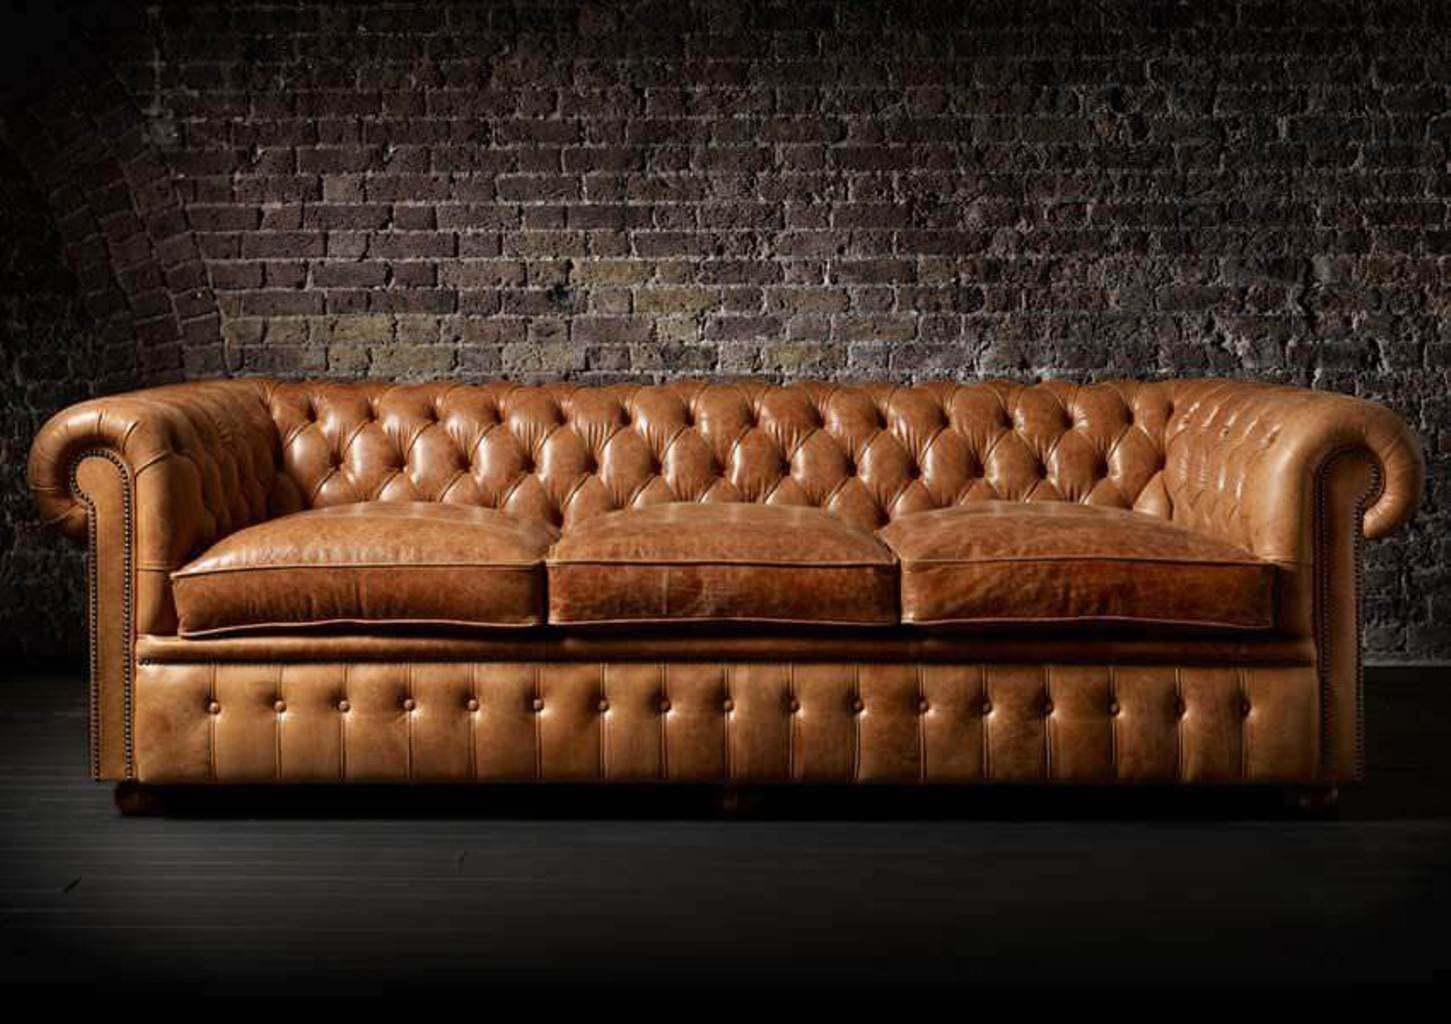 JVmoebel Sofa Chesterfield design Sofa Polster couch garnitur Leder 3 Sitzer SOFORT, 1 Teile, Made in Europa